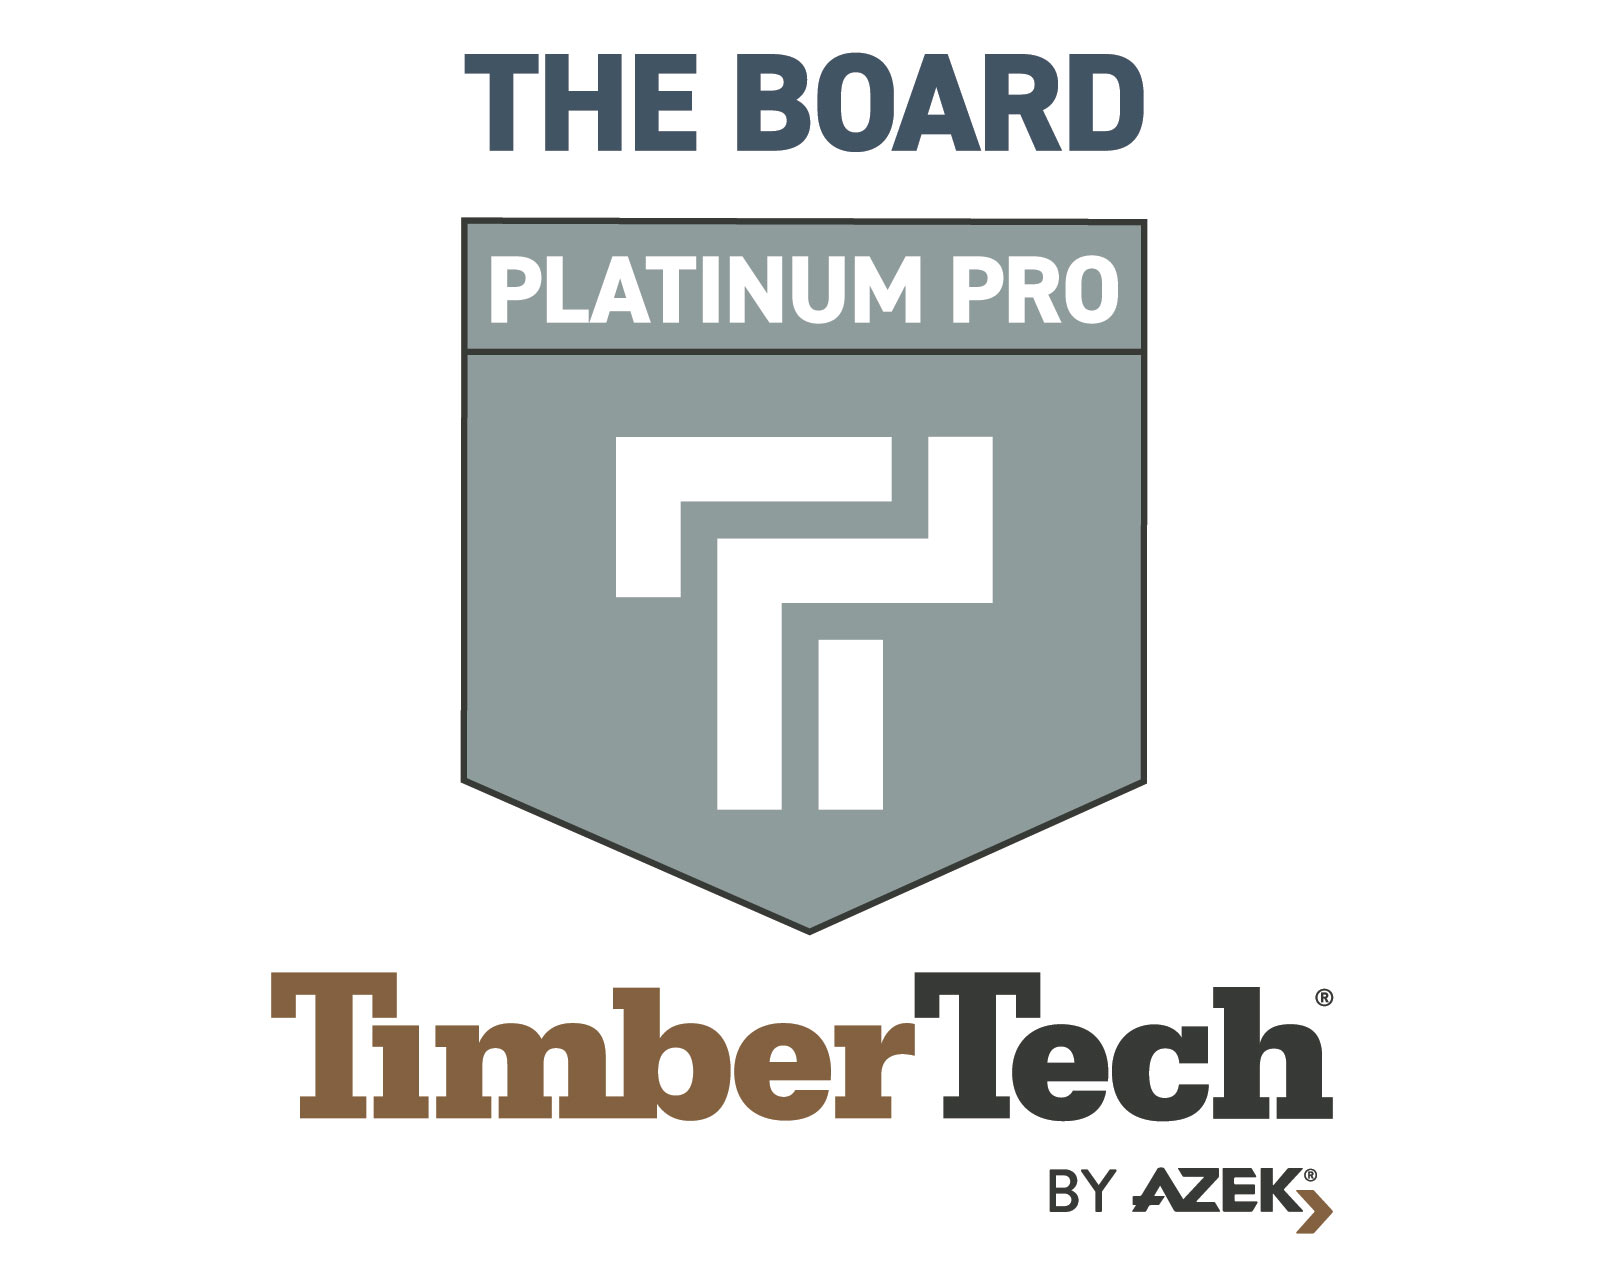 TimberTech Platinum Pro Badge